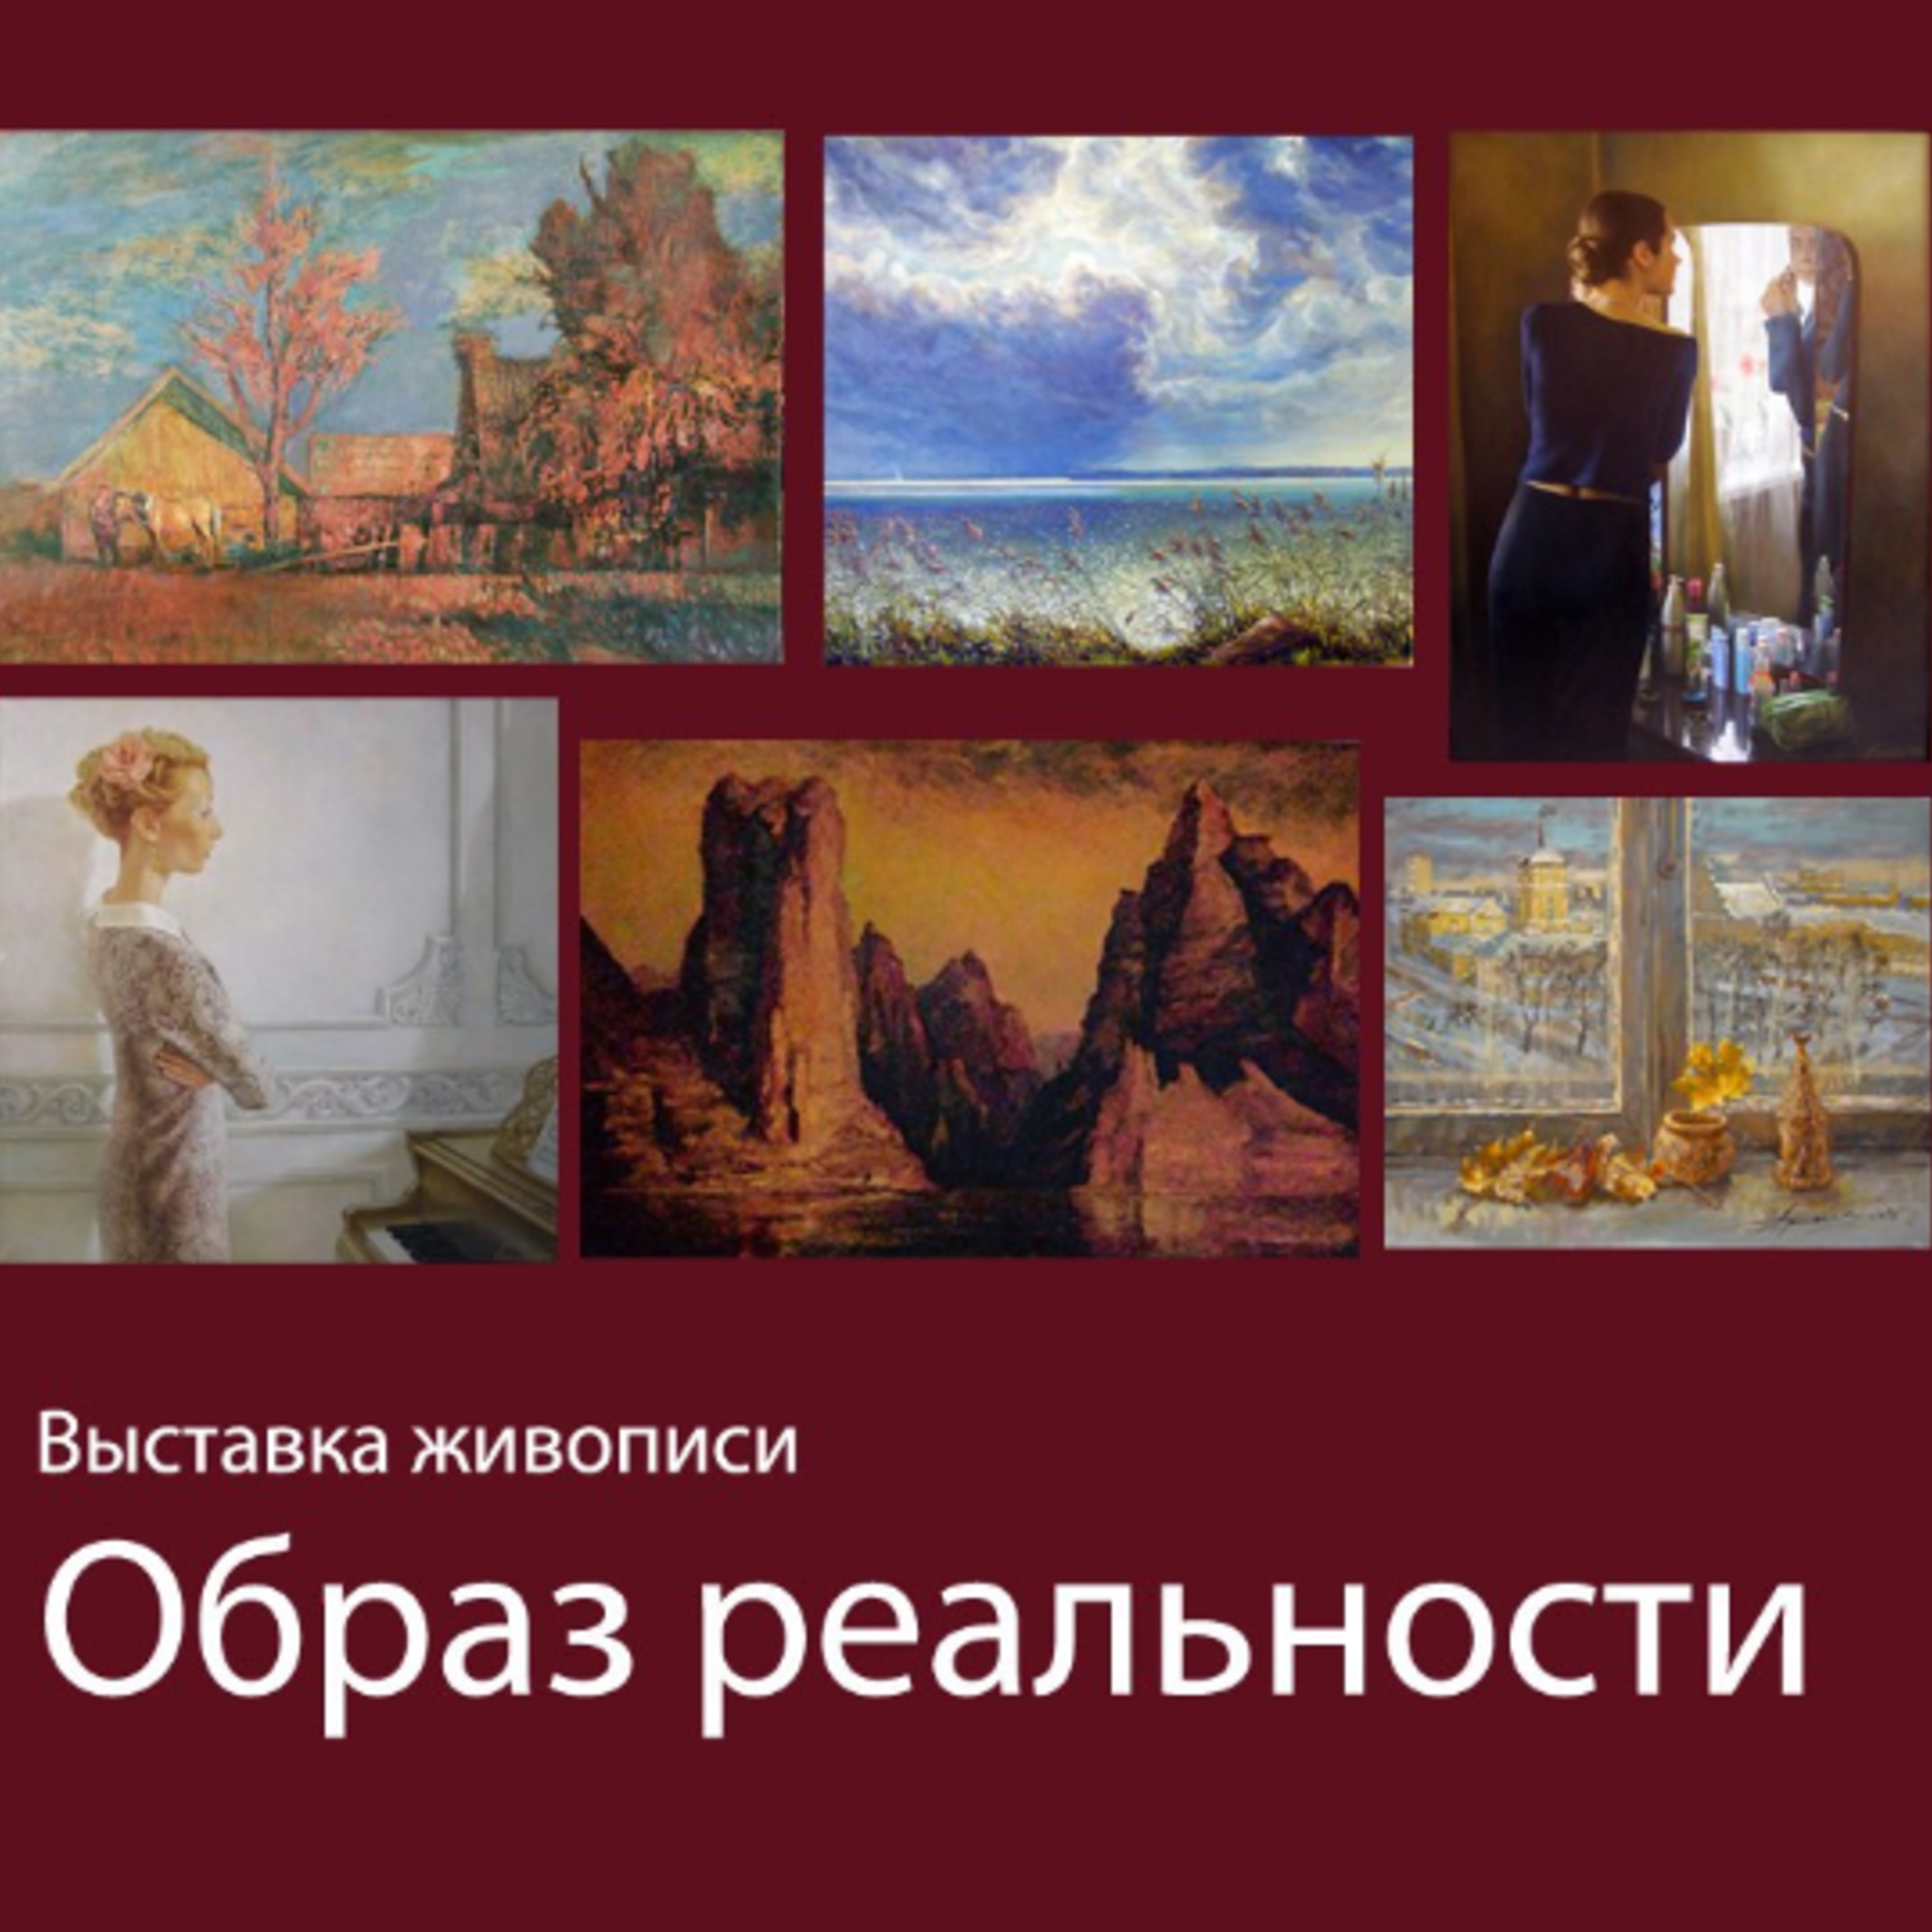 Описание выставки картин